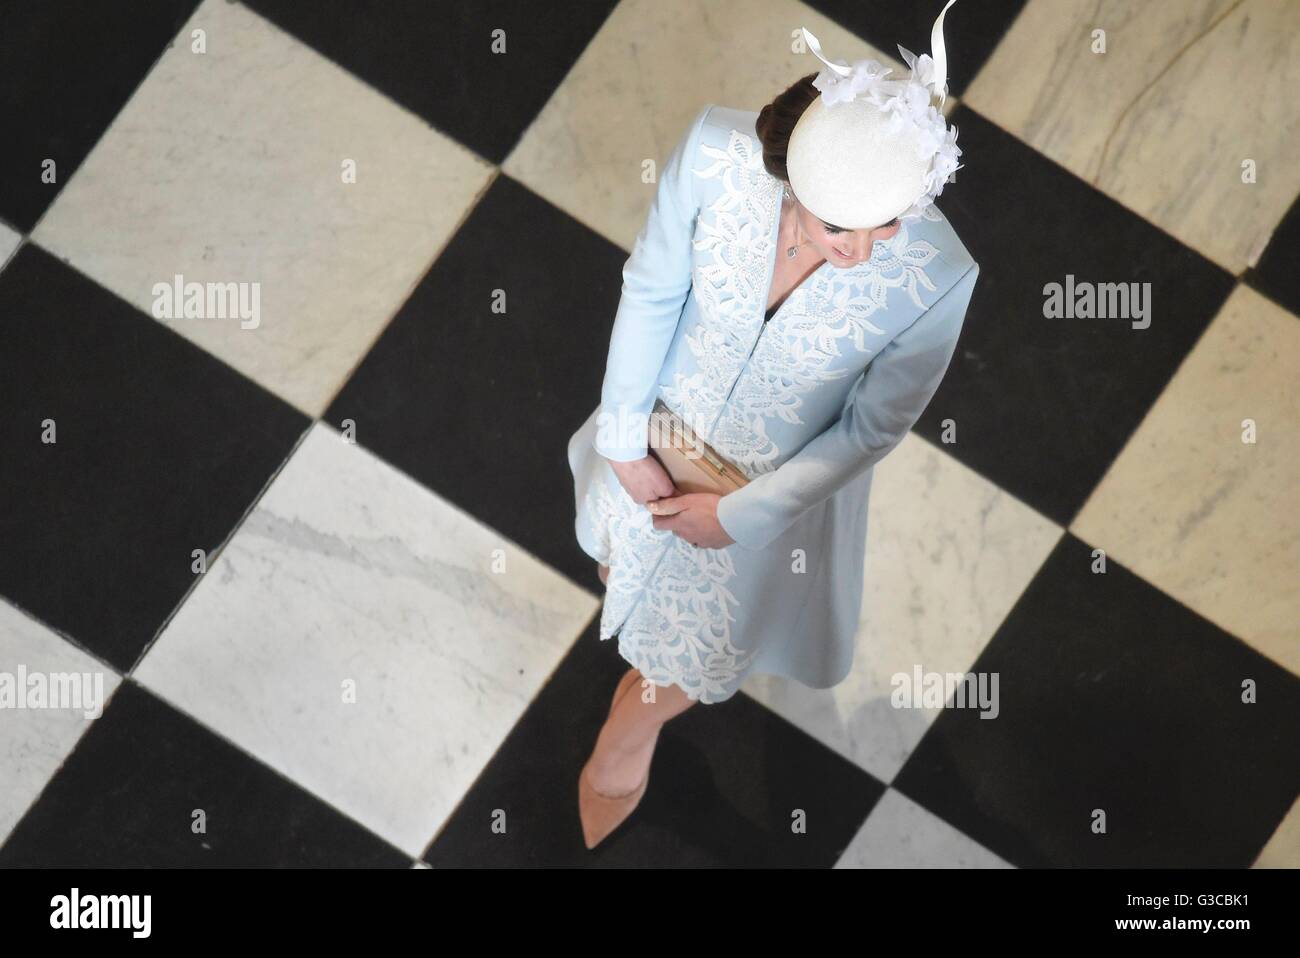 La duchesse de Cambridge arrive à la Cathédrale St Paul à Londres pour un service national d'action de grâce pour célébrer le 90e anniversaire de la reine Elizabeth II. Banque D'Images